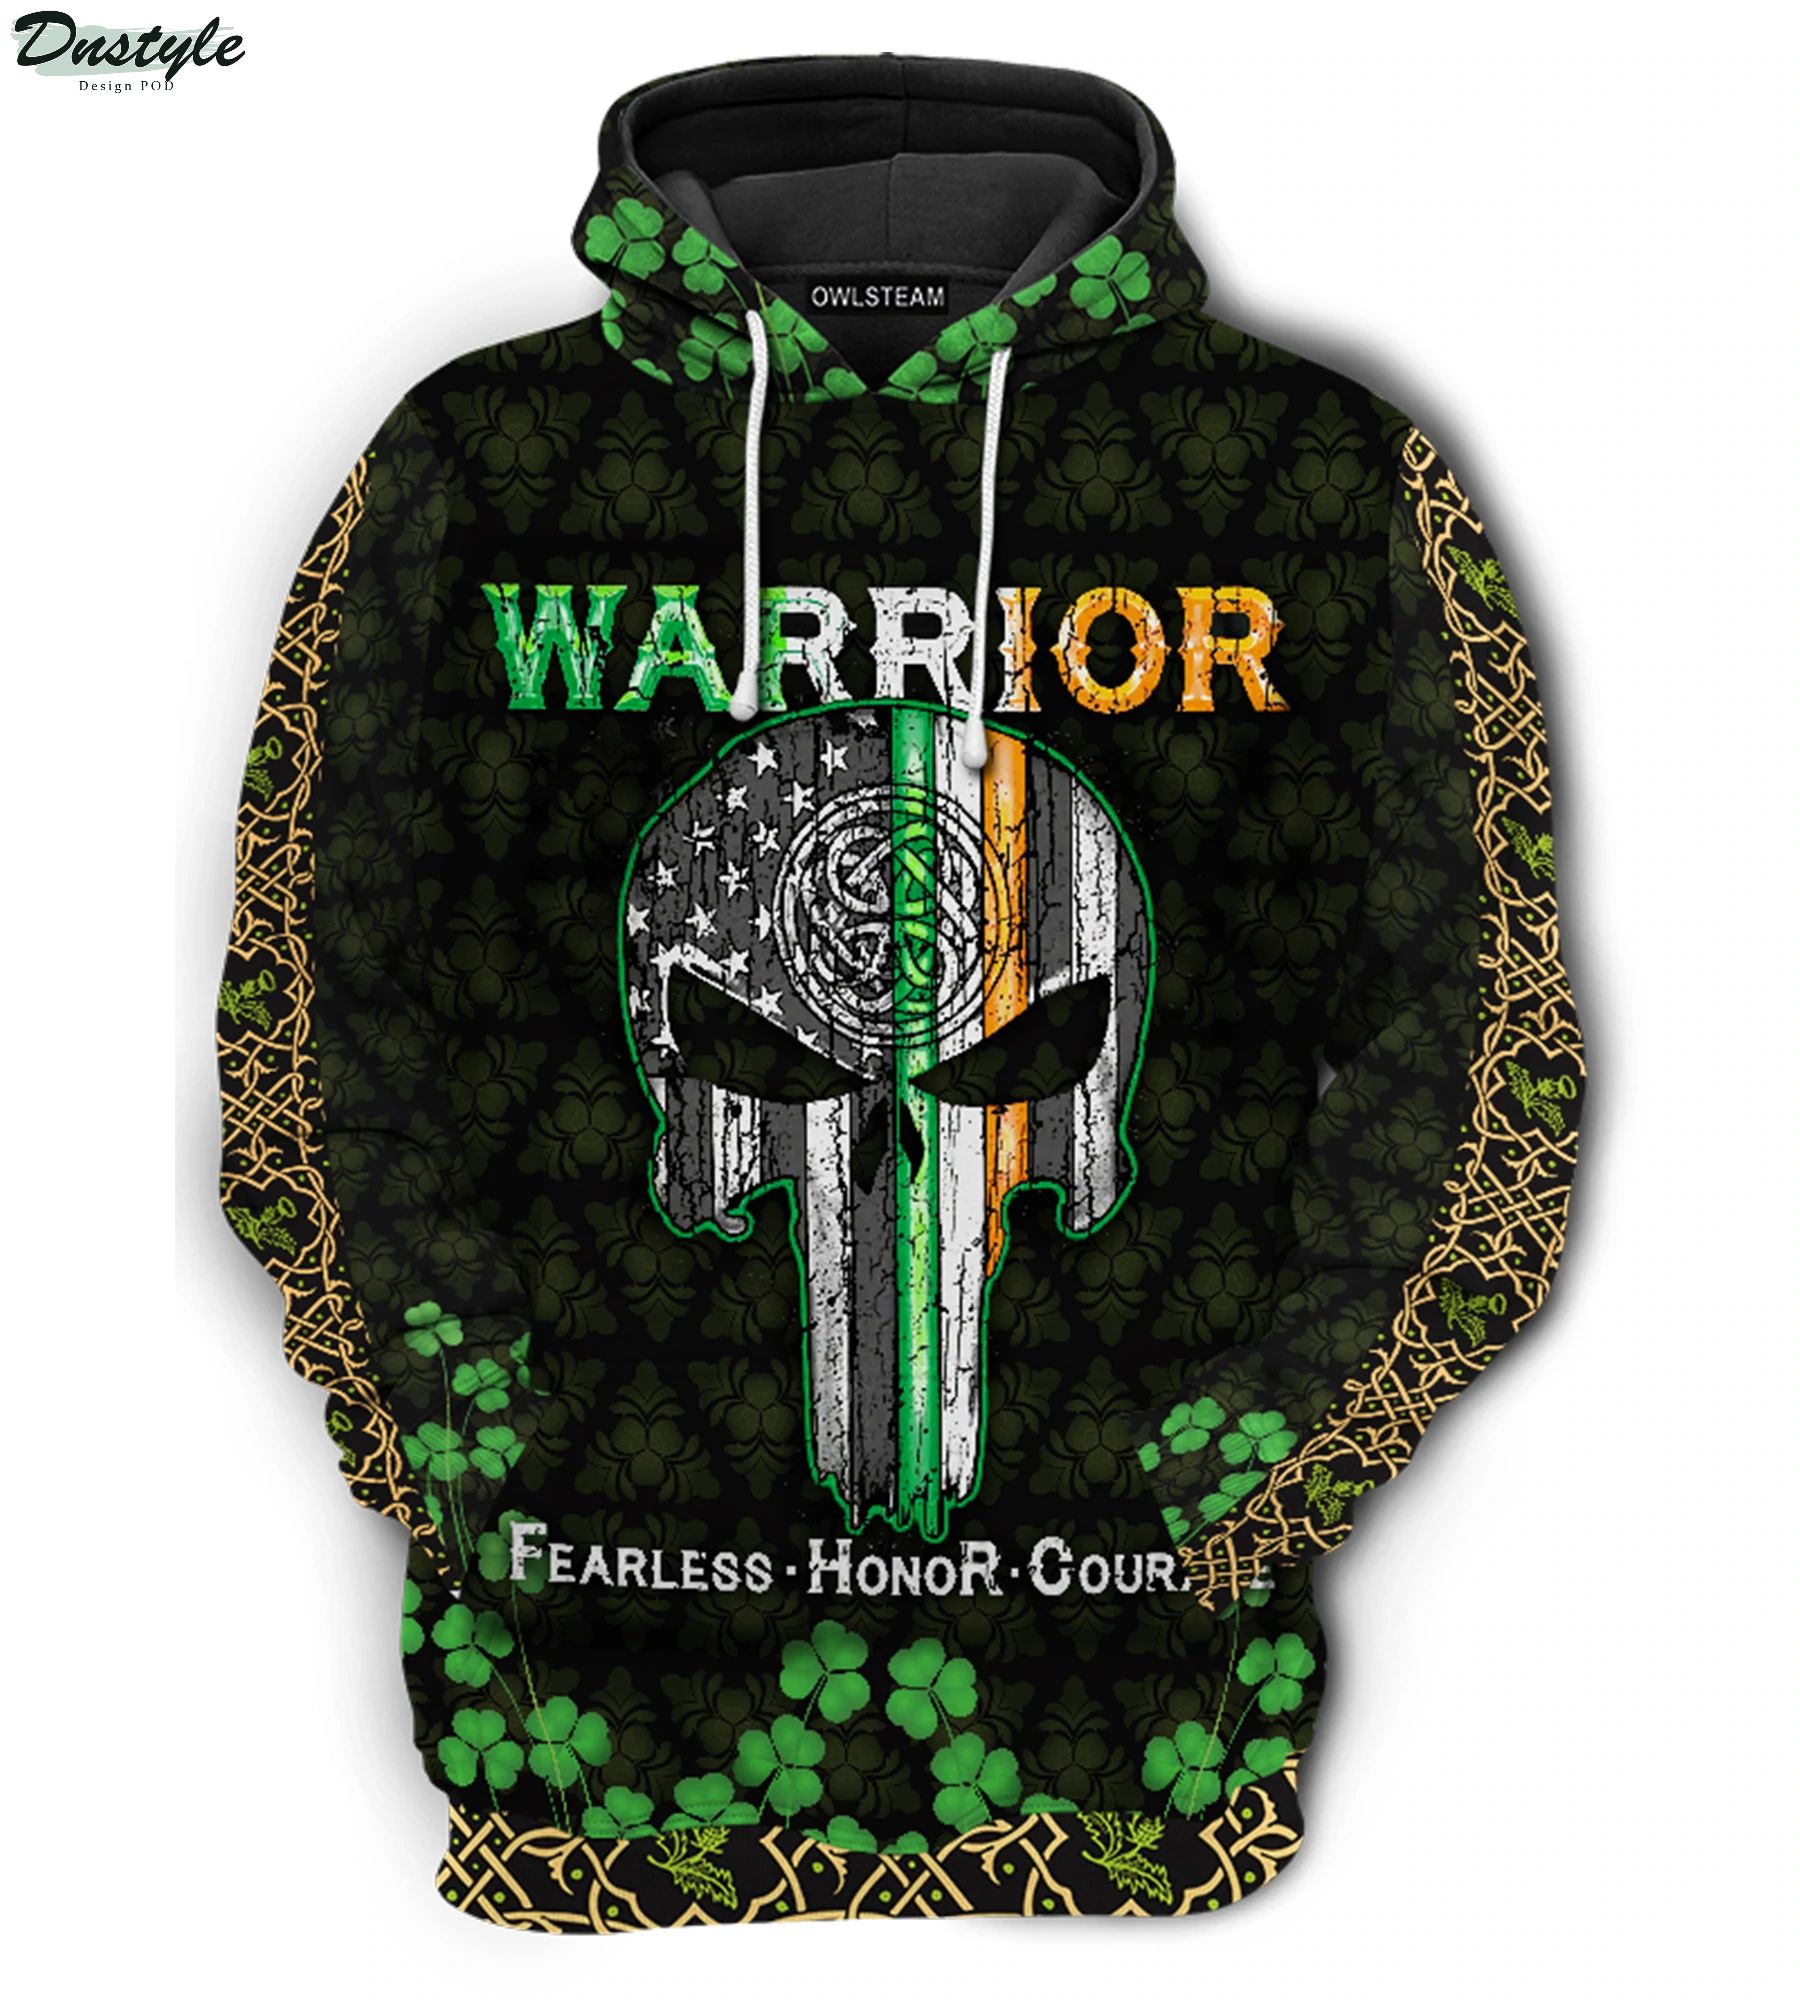 Irish warrior fearless honor courage 3d printed hoodie